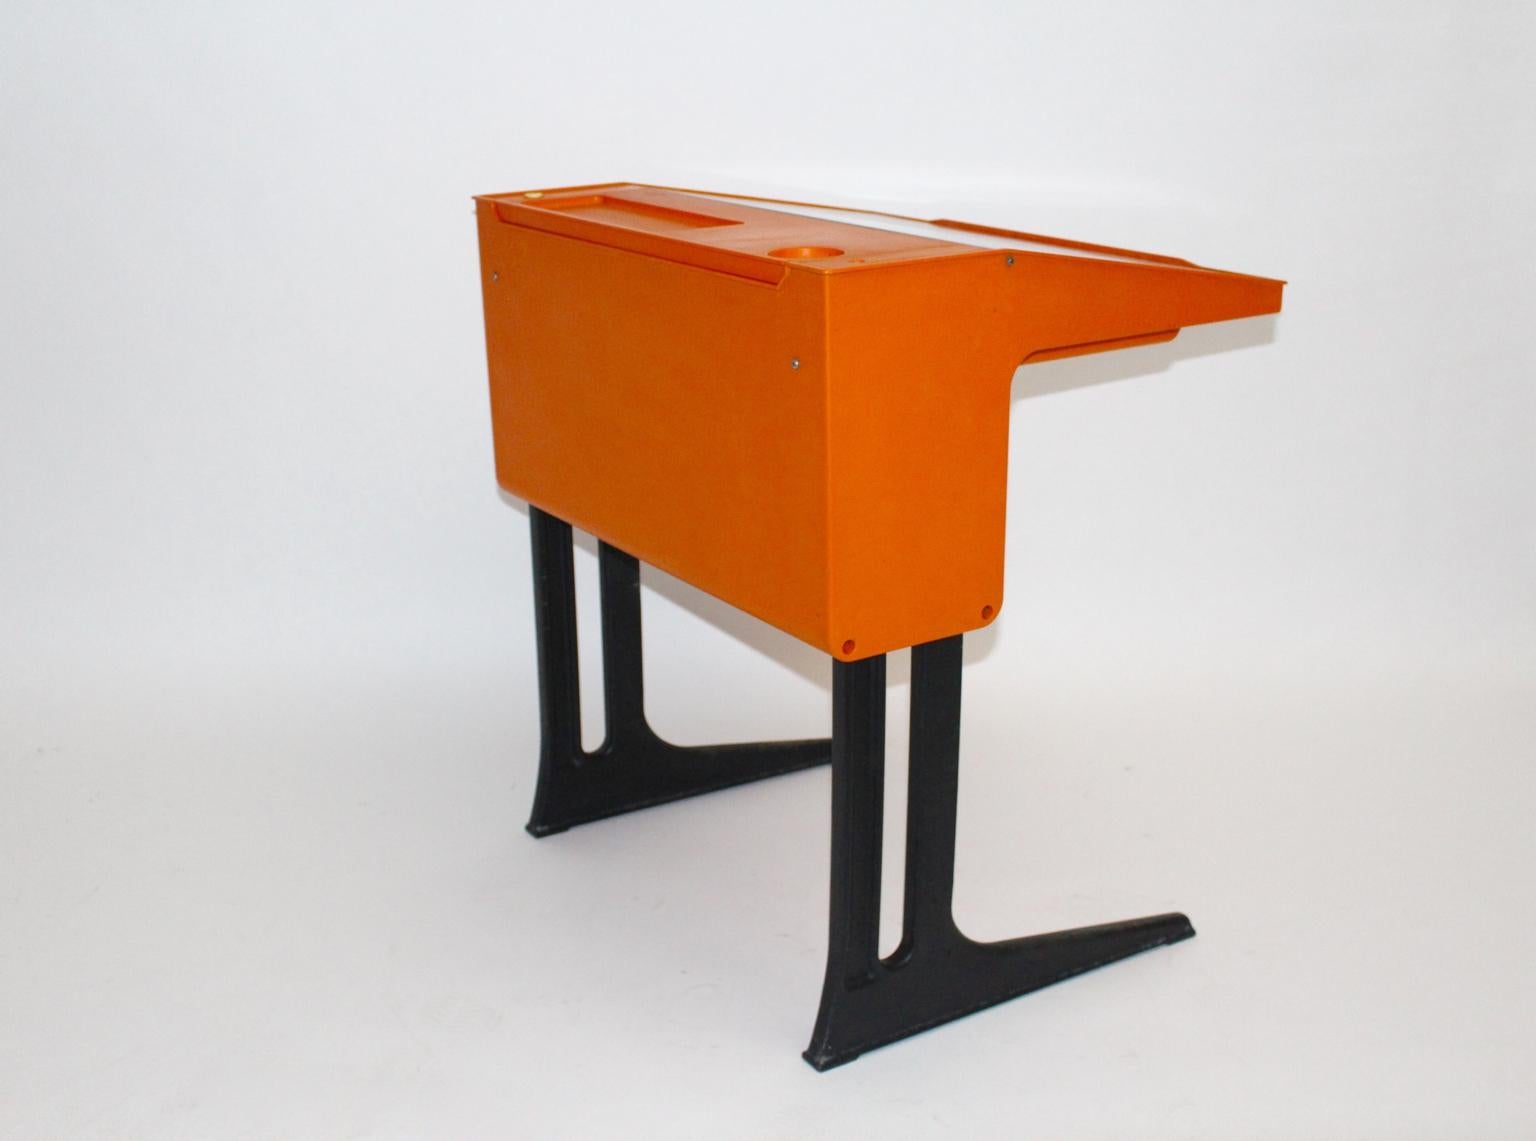 Space Age Oranger Kunststoff-Schreibtisch für Kinder von Luigi Colani, Deutschland, um 1970 (Ende des 20. Jahrhunderts)